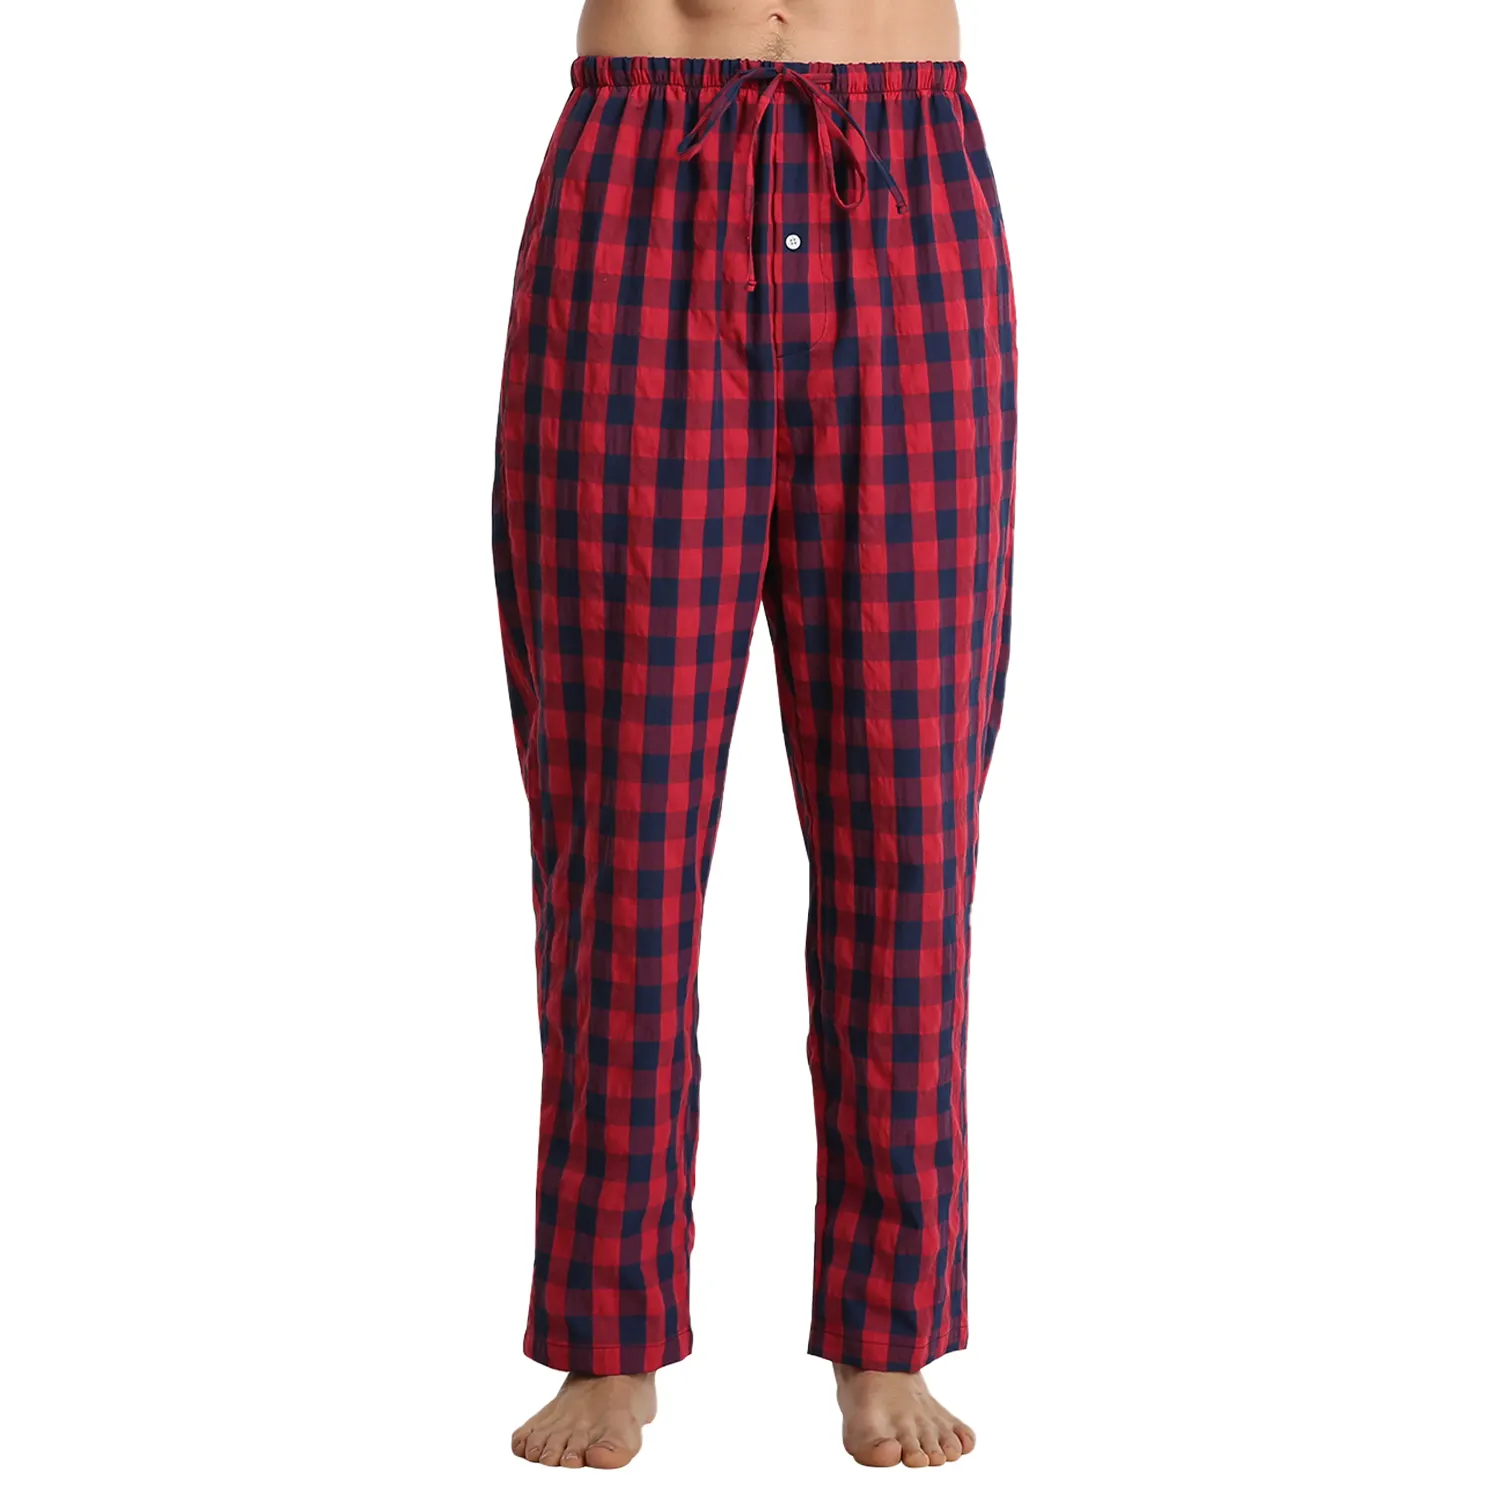 Pyjamas Men Cotton Pants Lounge Sleep Plaid Pajama Bottoms for Men Soft Warm Drawstring Nightwear